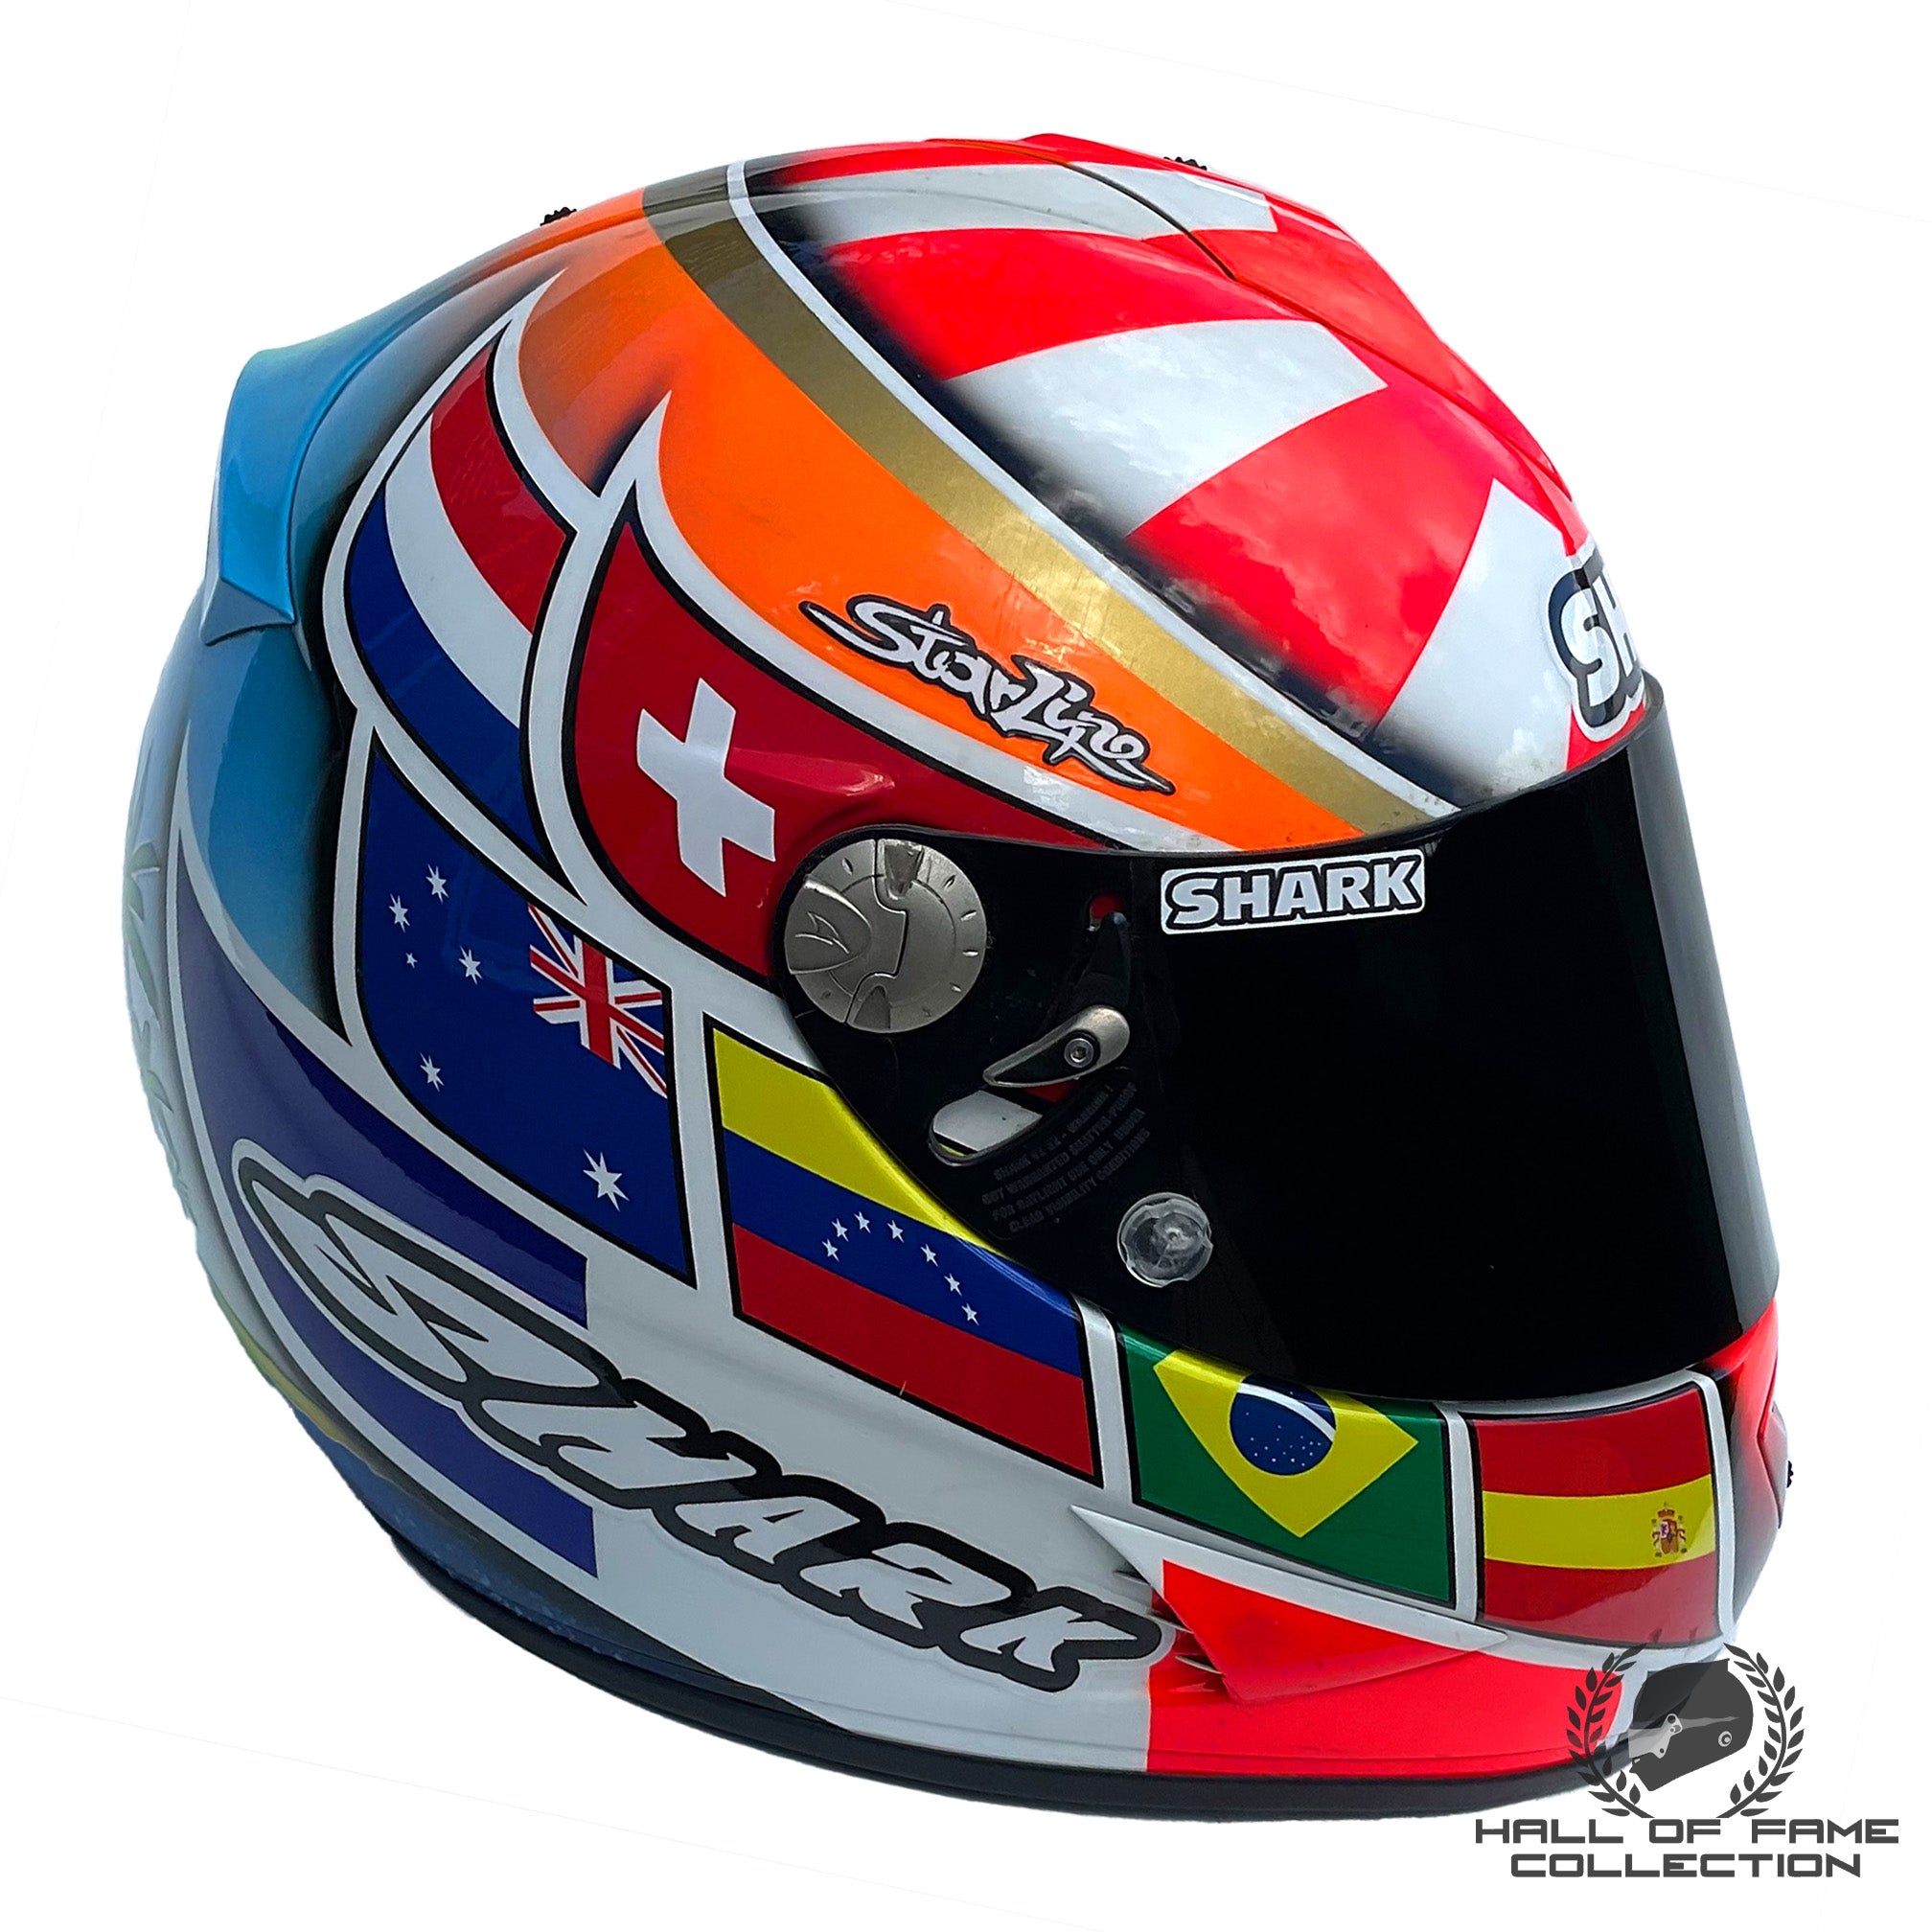 2009 Johann Zarco Race Used WTR San Marino Team 125cc Helmet